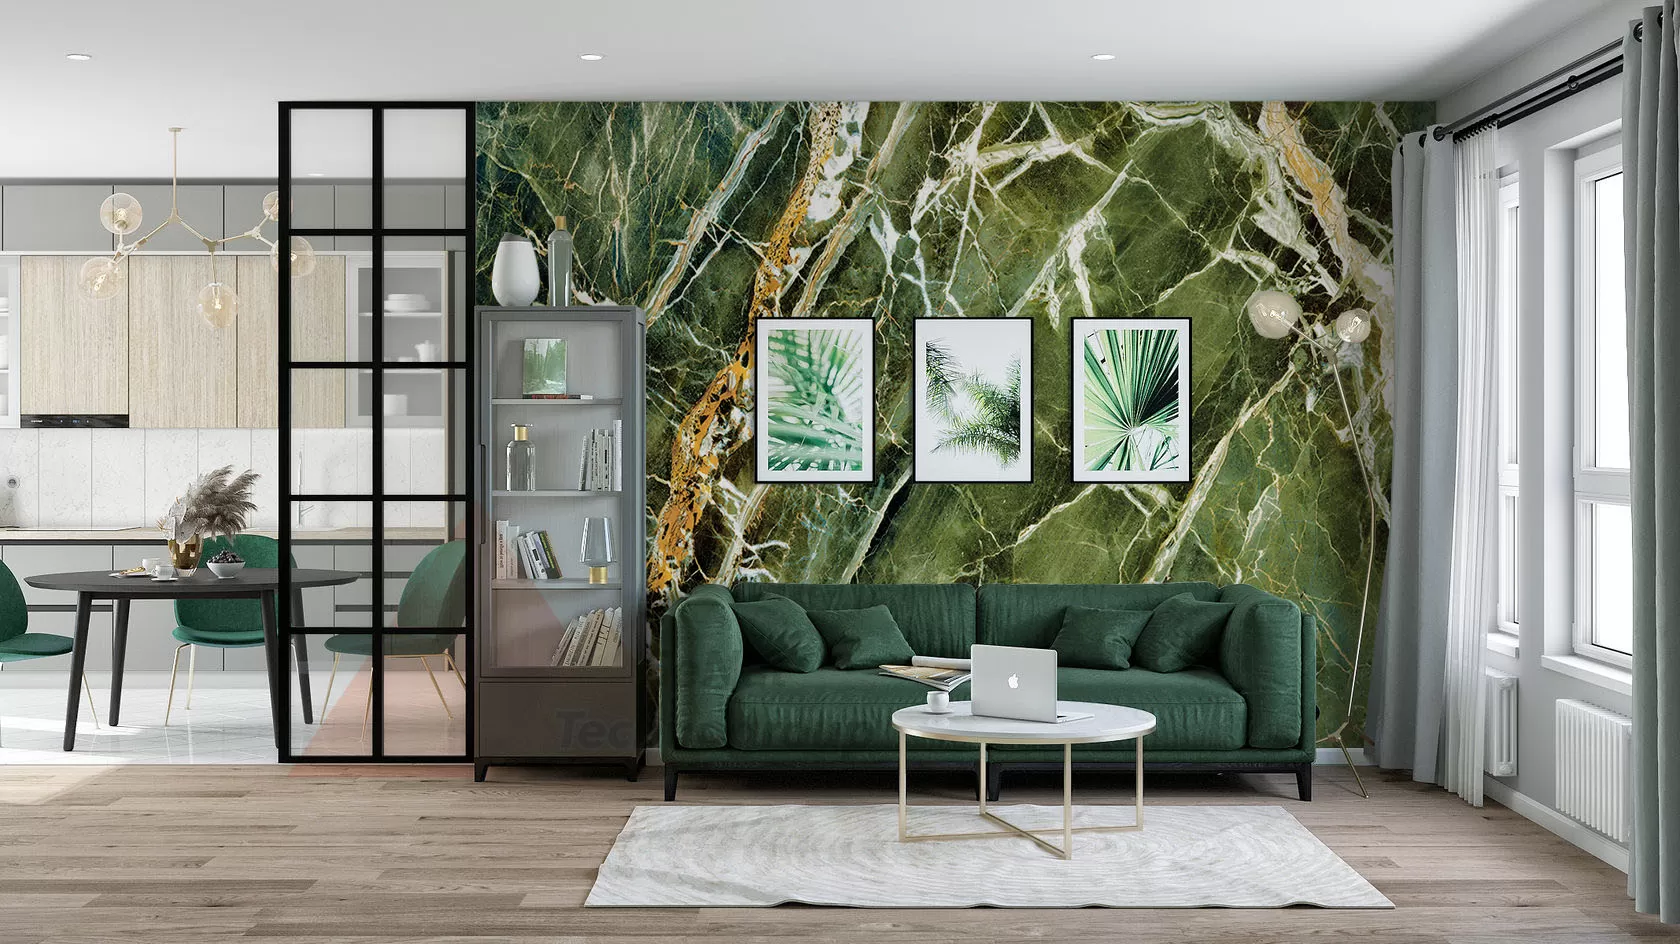 Нефрит Cl гибкий мрамор зеленого цвета для стен, фасадов и для светодизайна.